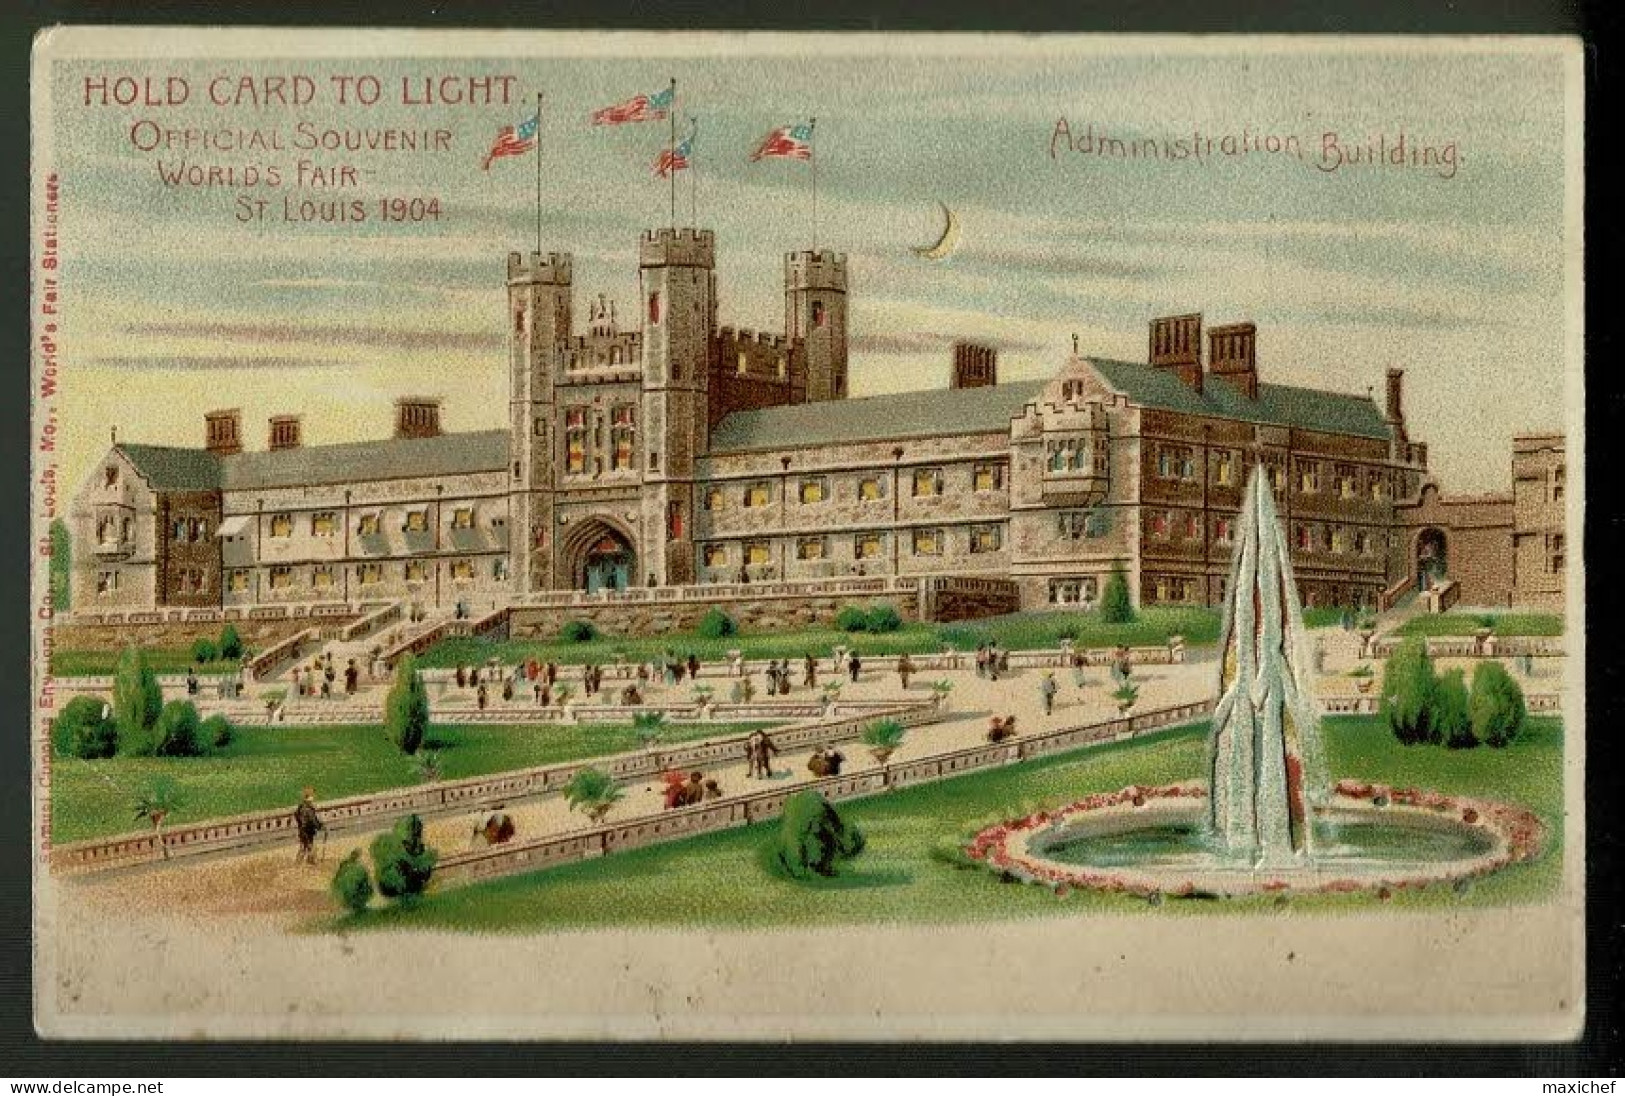 Carte Illustrée Hold Card To Light - Official Souvenir Worlds Fair St Louis 1904 - Administration Building - Pas Circulé - Contre La Lumière